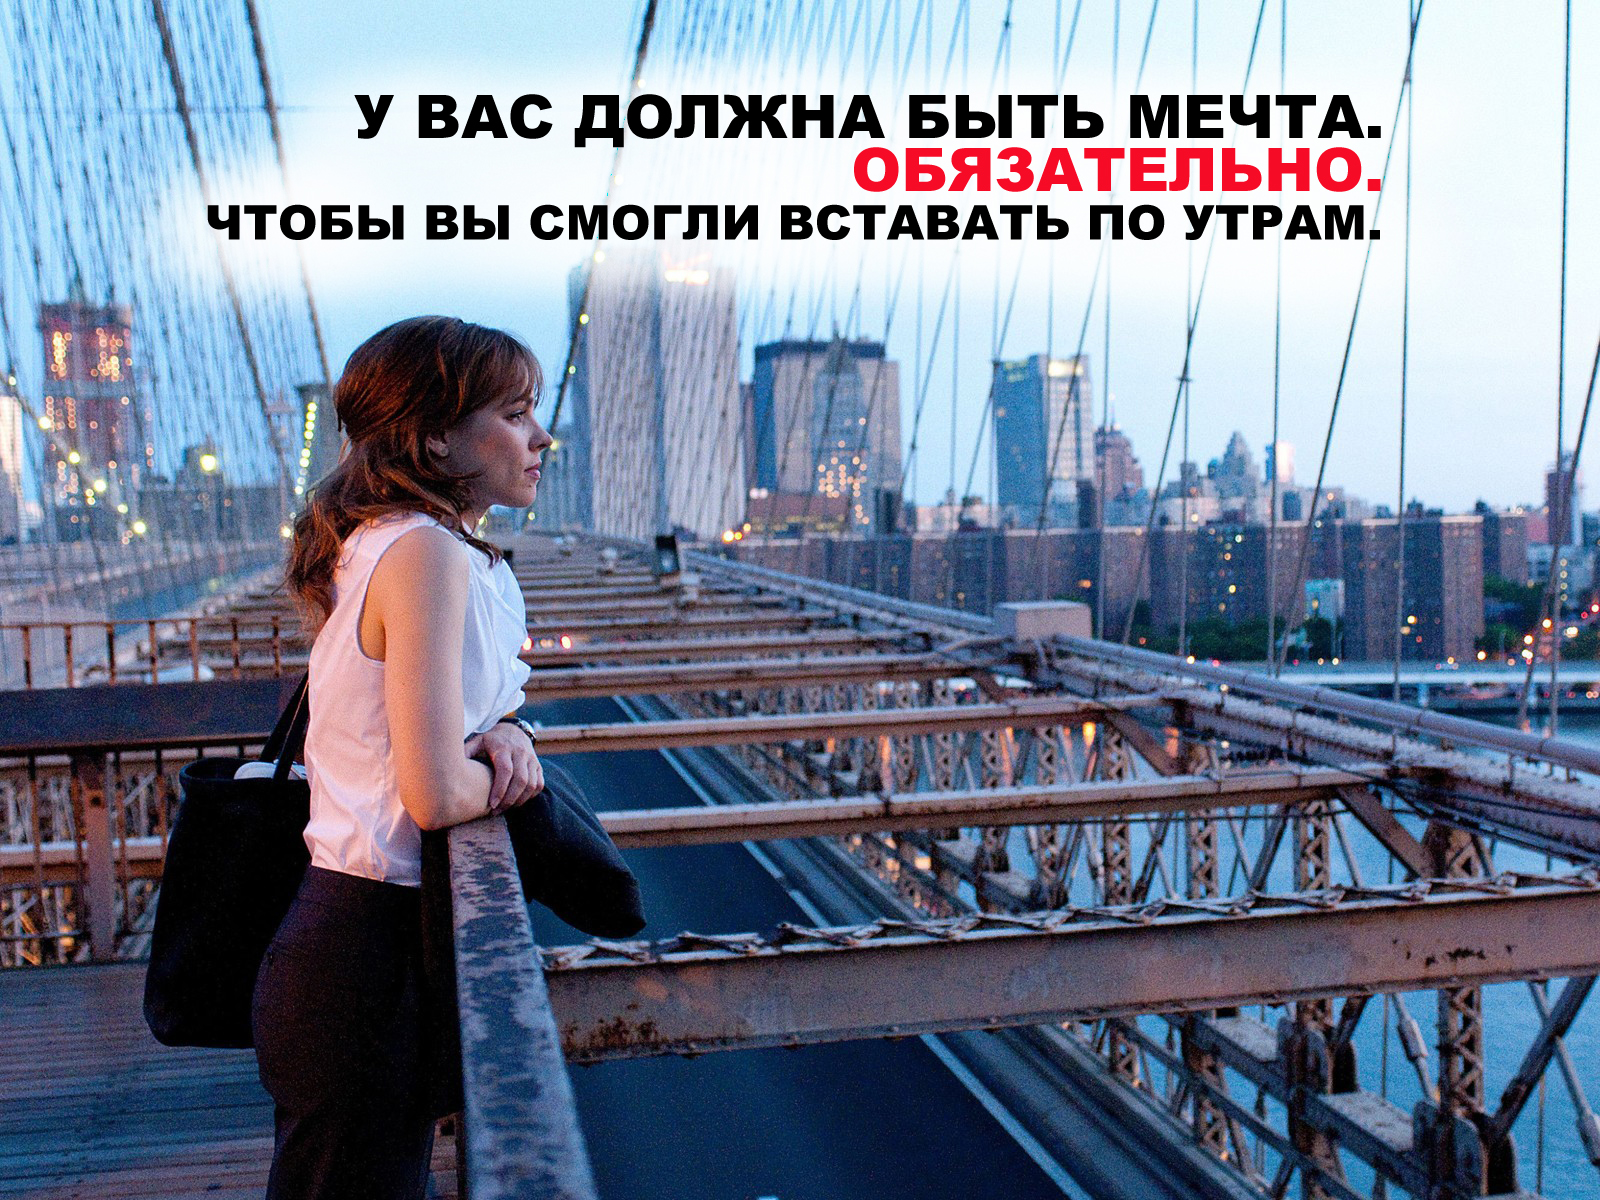 http://motivationals.ru/uploads/posts/2012-04/1334733505_mechta-ful.jpg